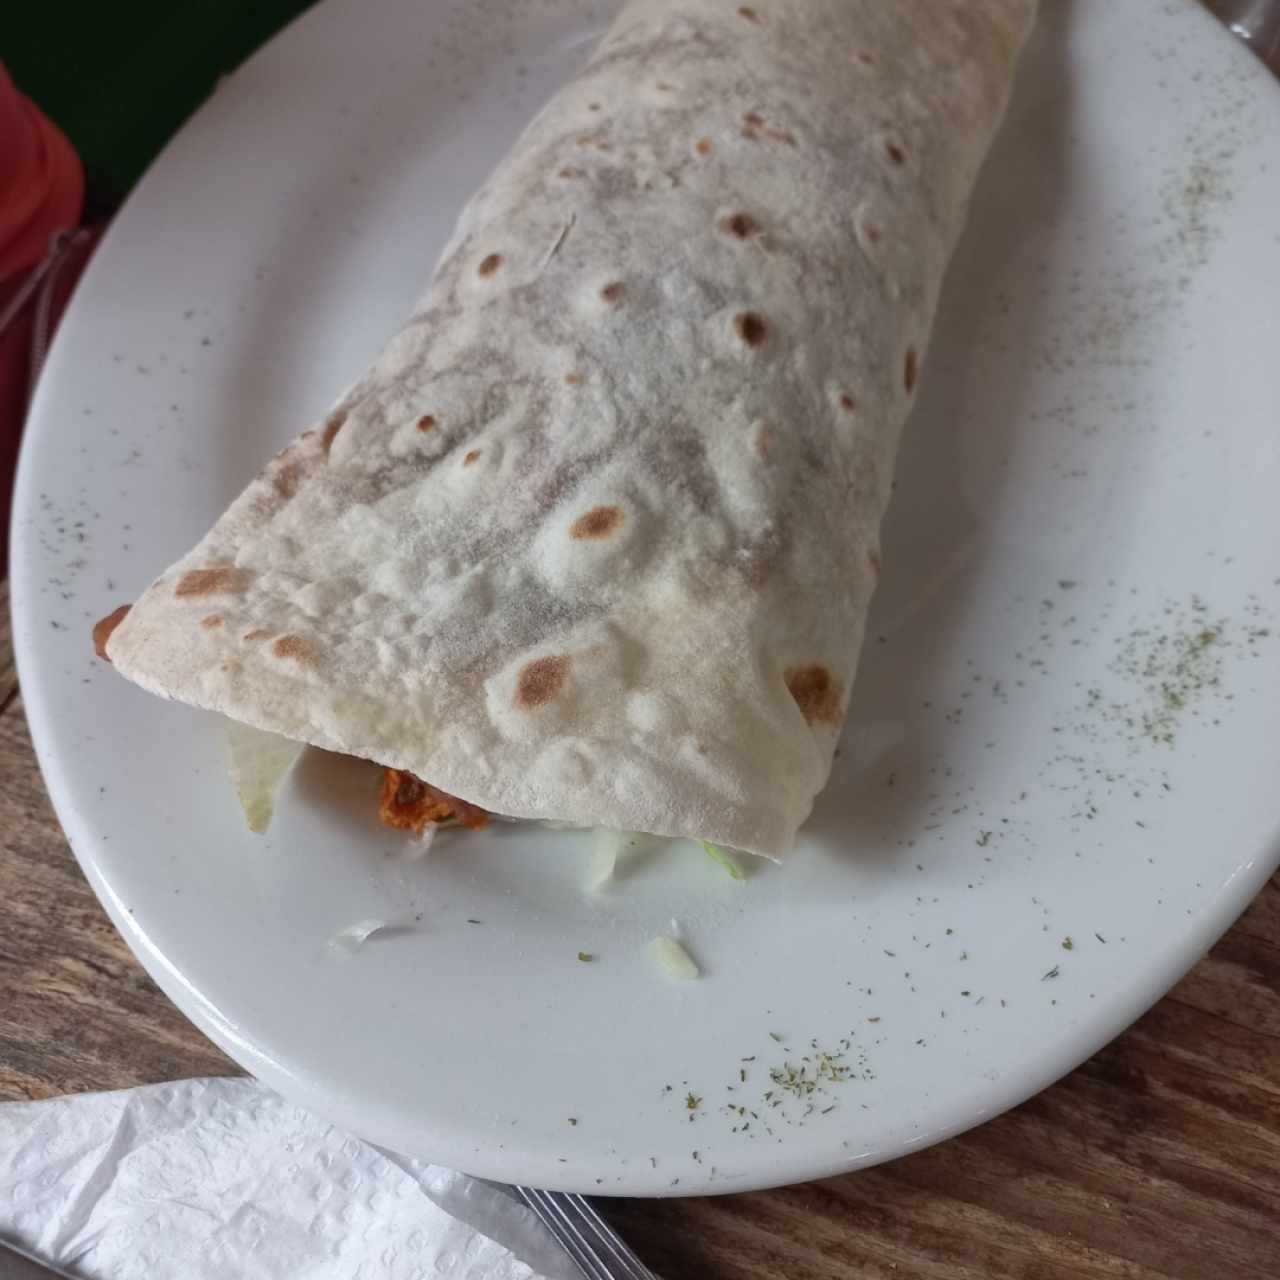 Burritos - Burrito Especial Charro